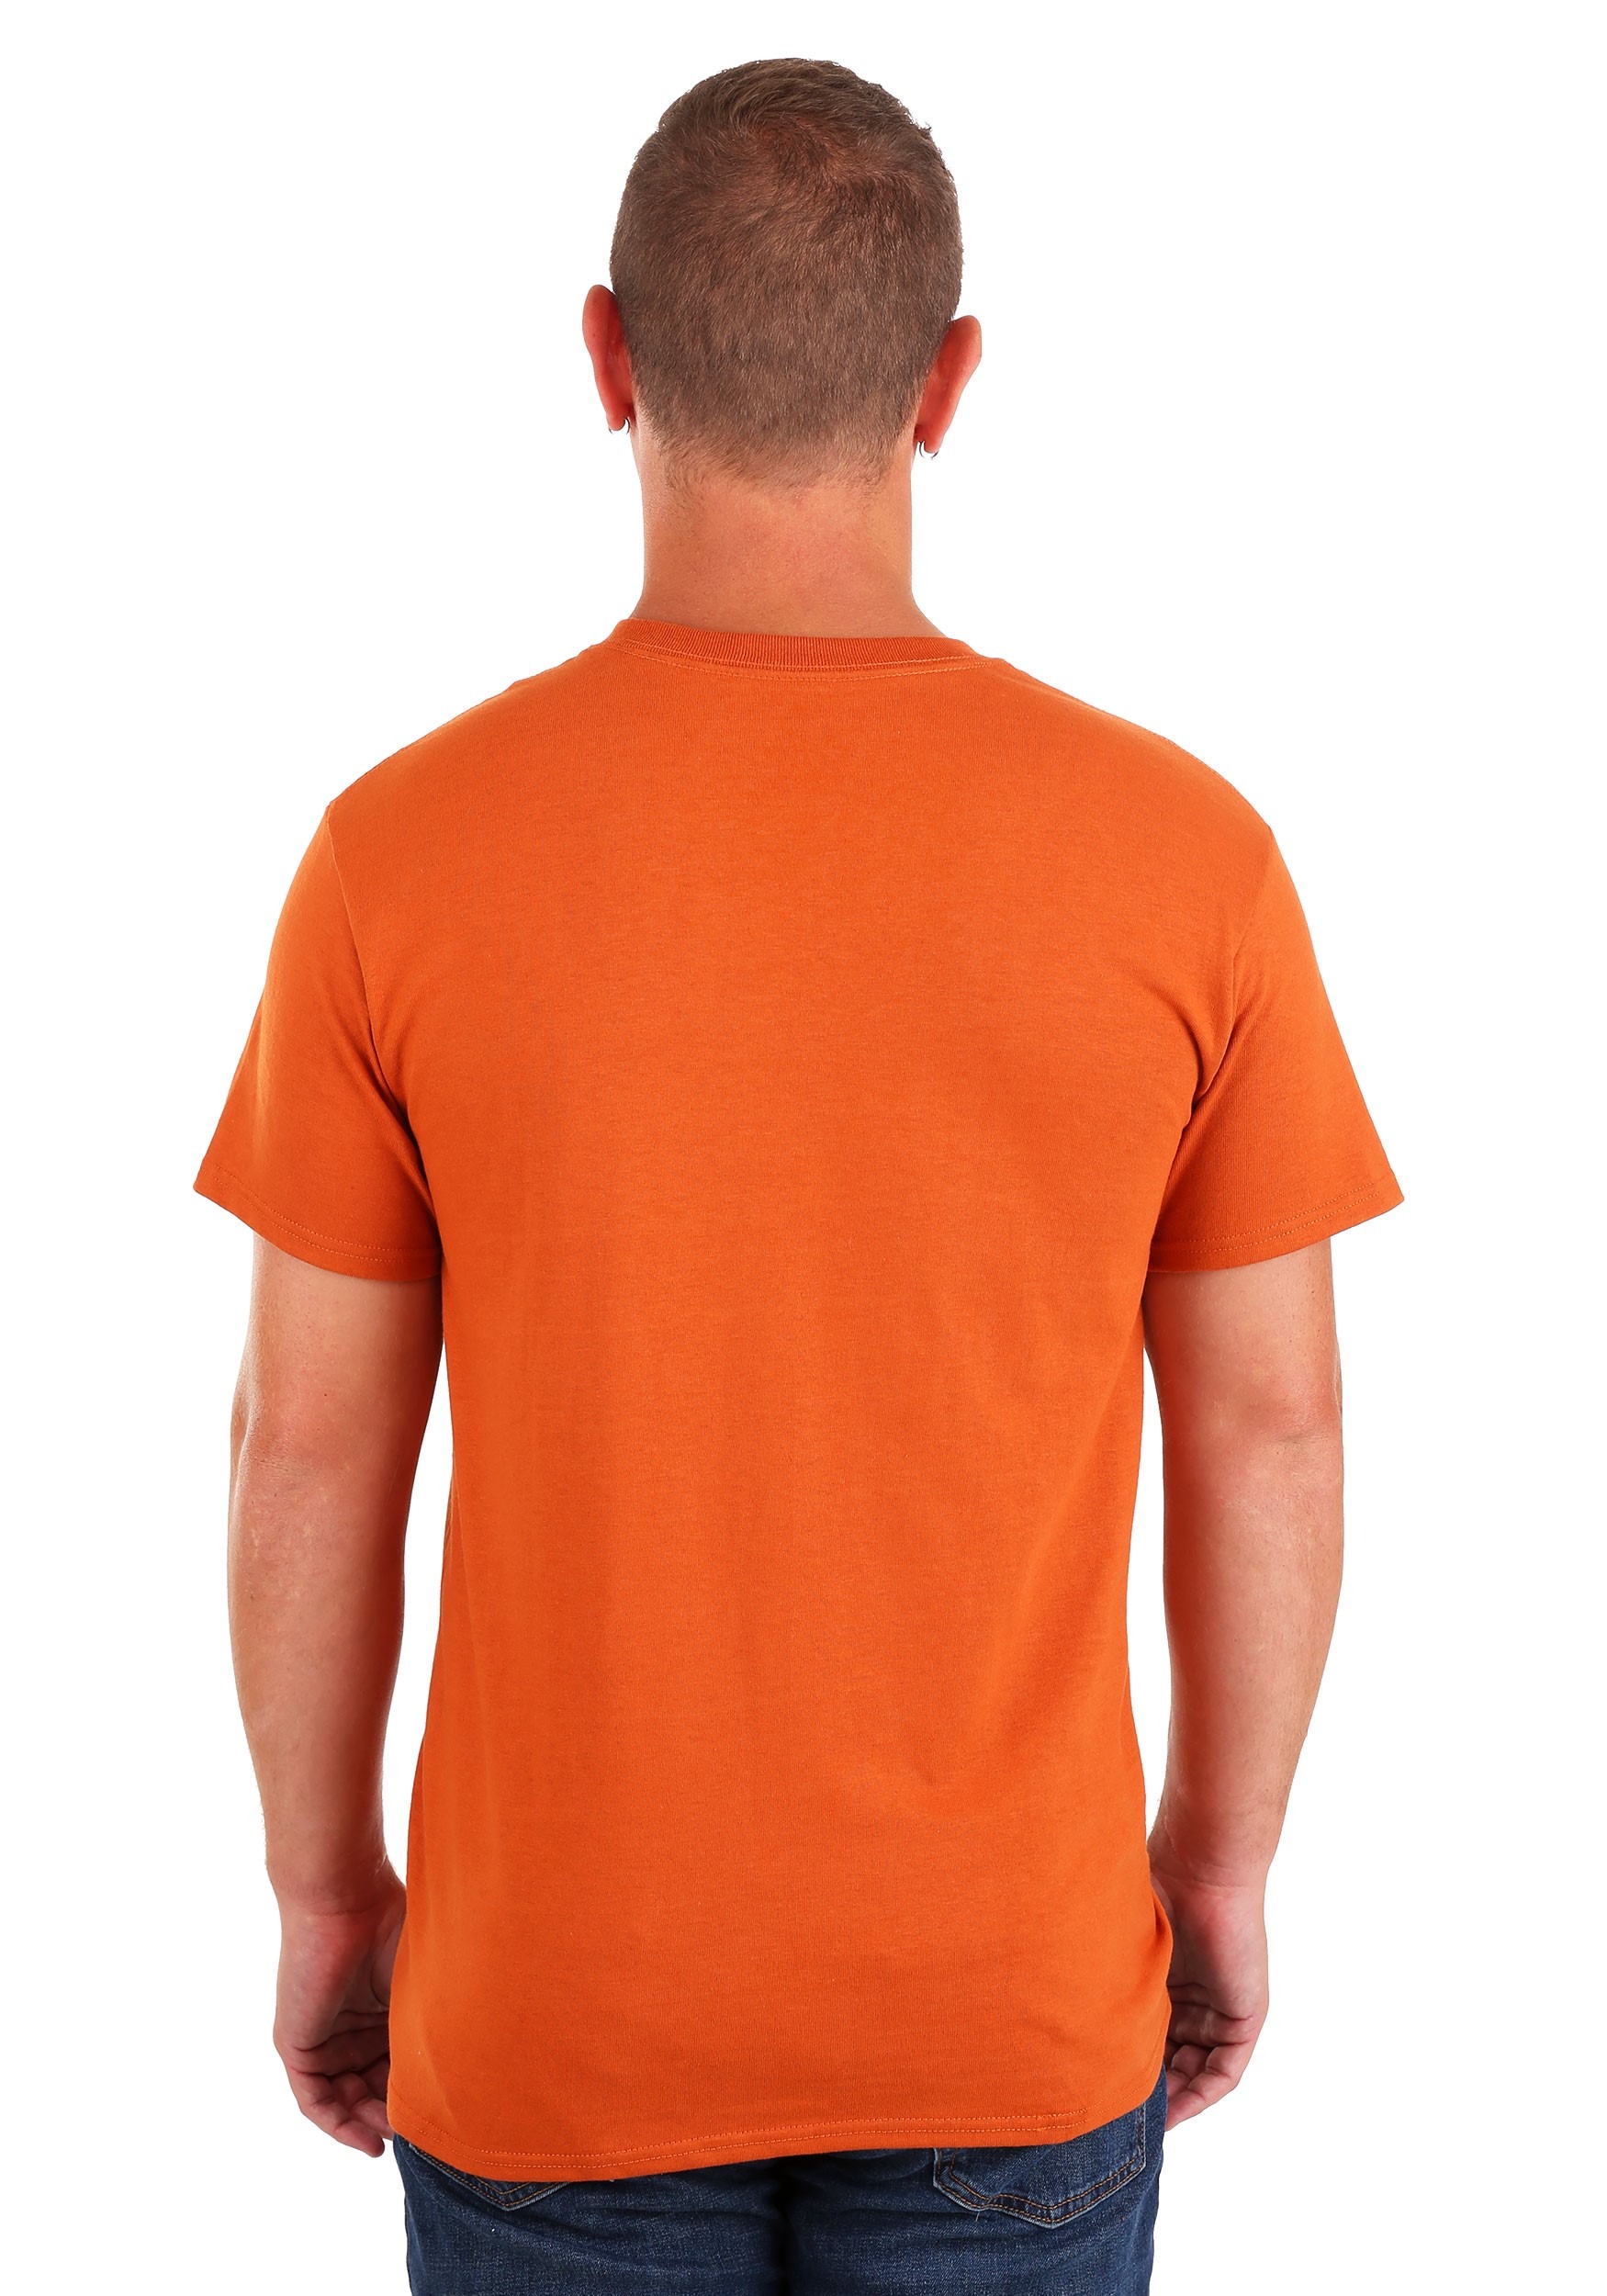 orange t shirt man